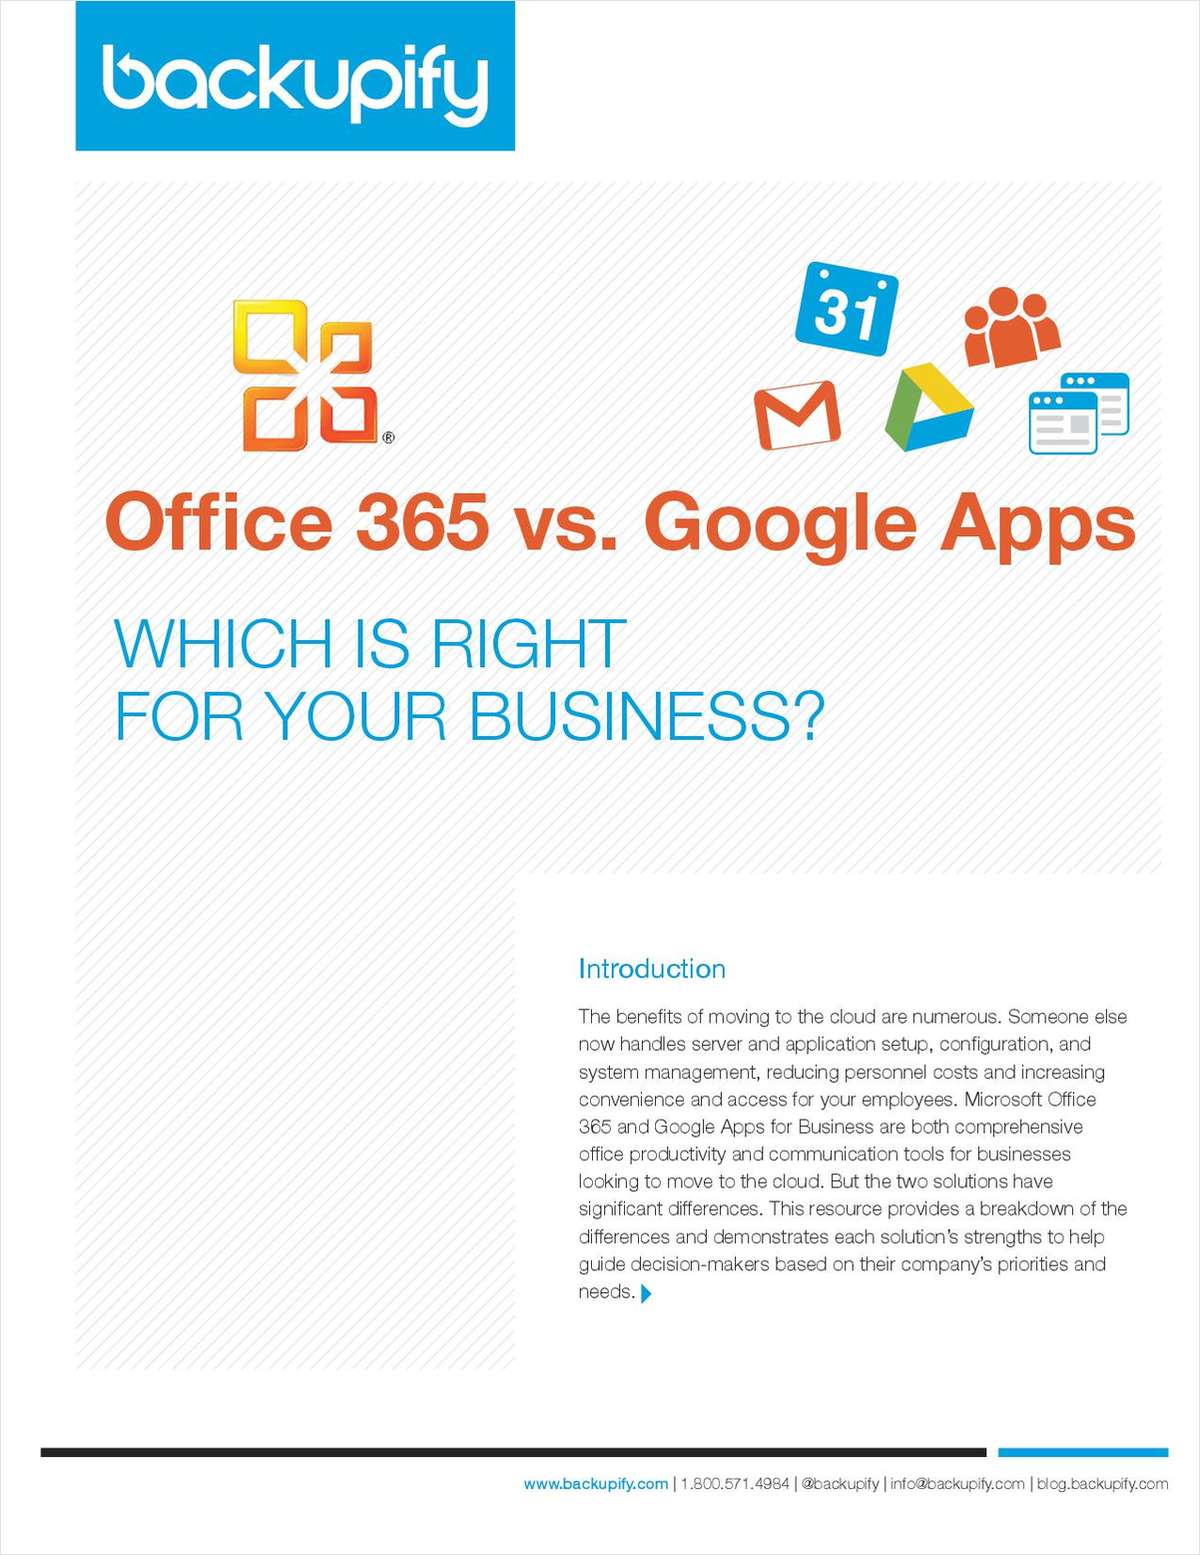 Office 365 vs Google Apps